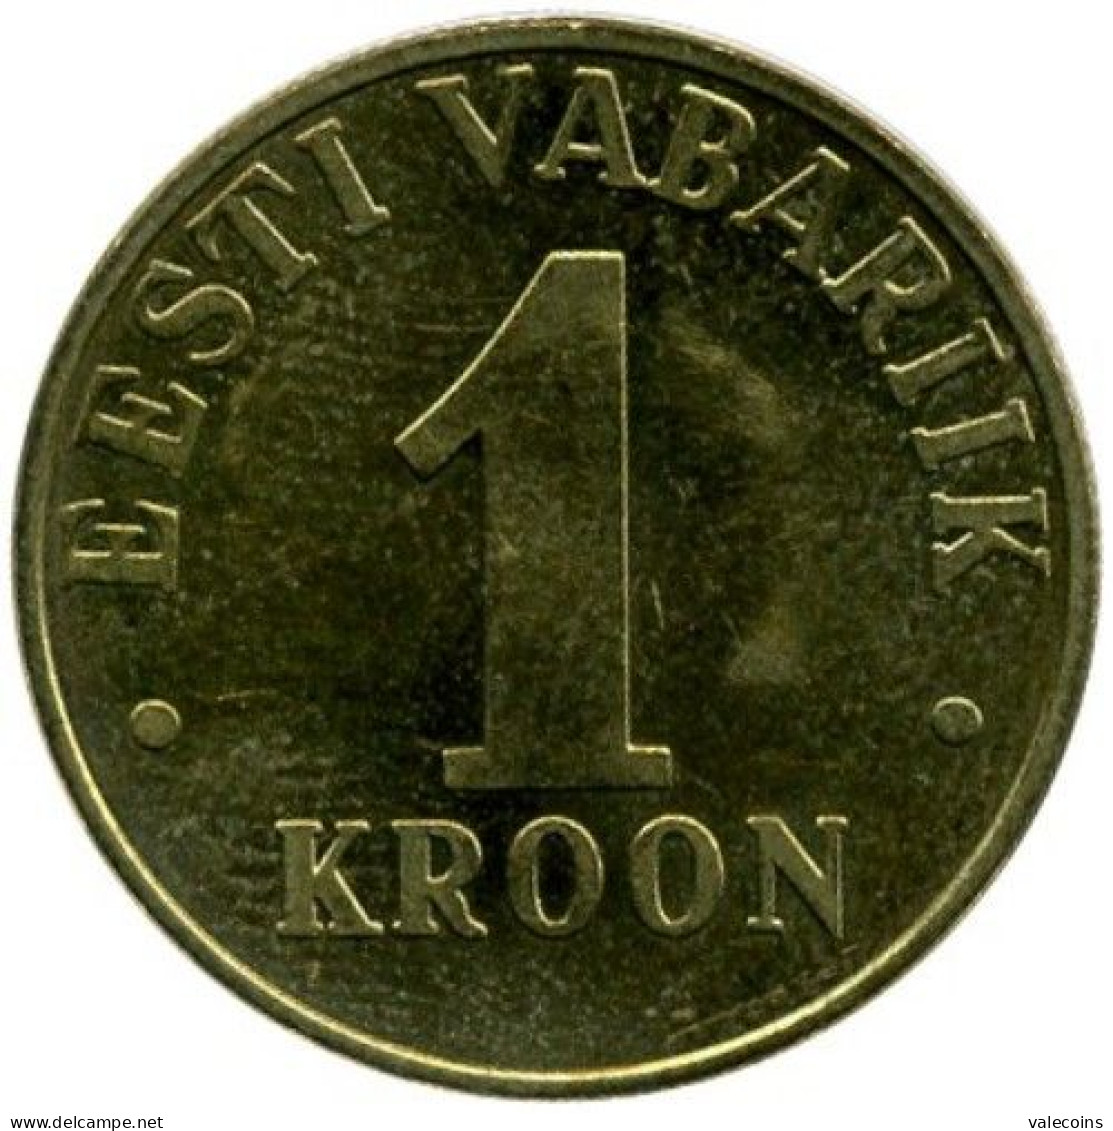 ESTONIA EESTI - 2001 - 1 Kroon - KM  35 - UNC - Estland